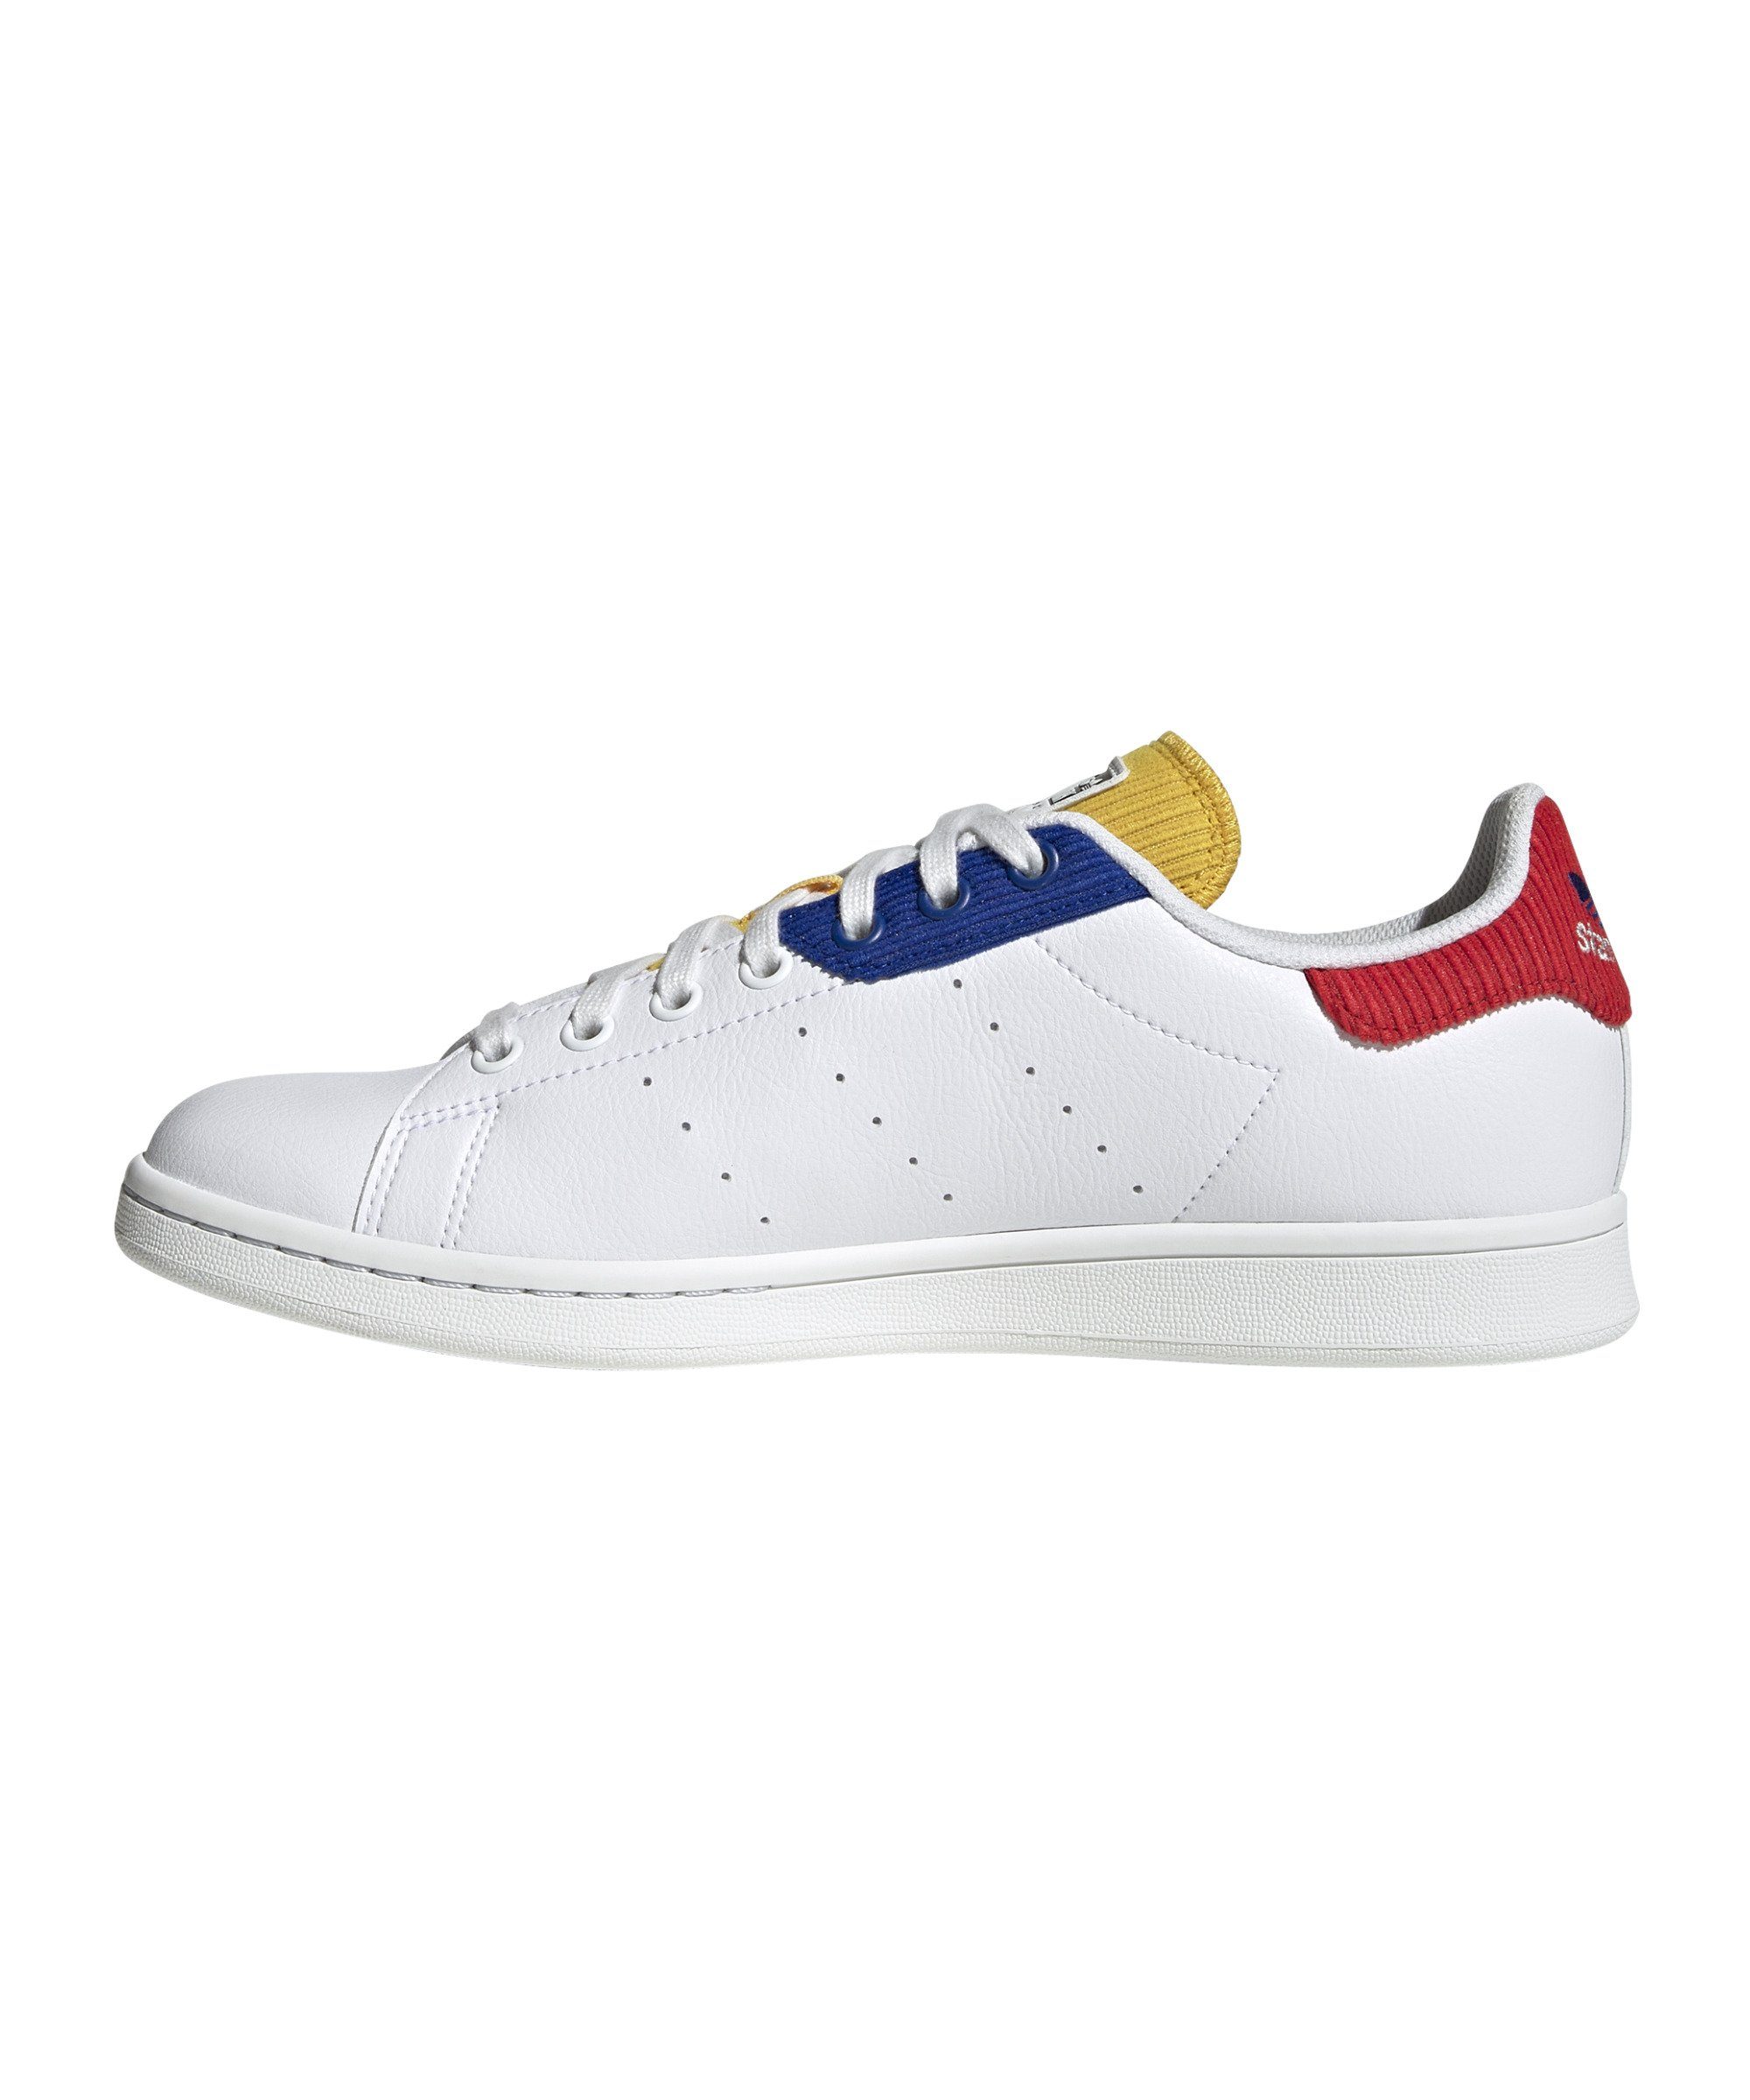 adidas Originals »Stan Smith« Sneaker online kaufen | OTTO